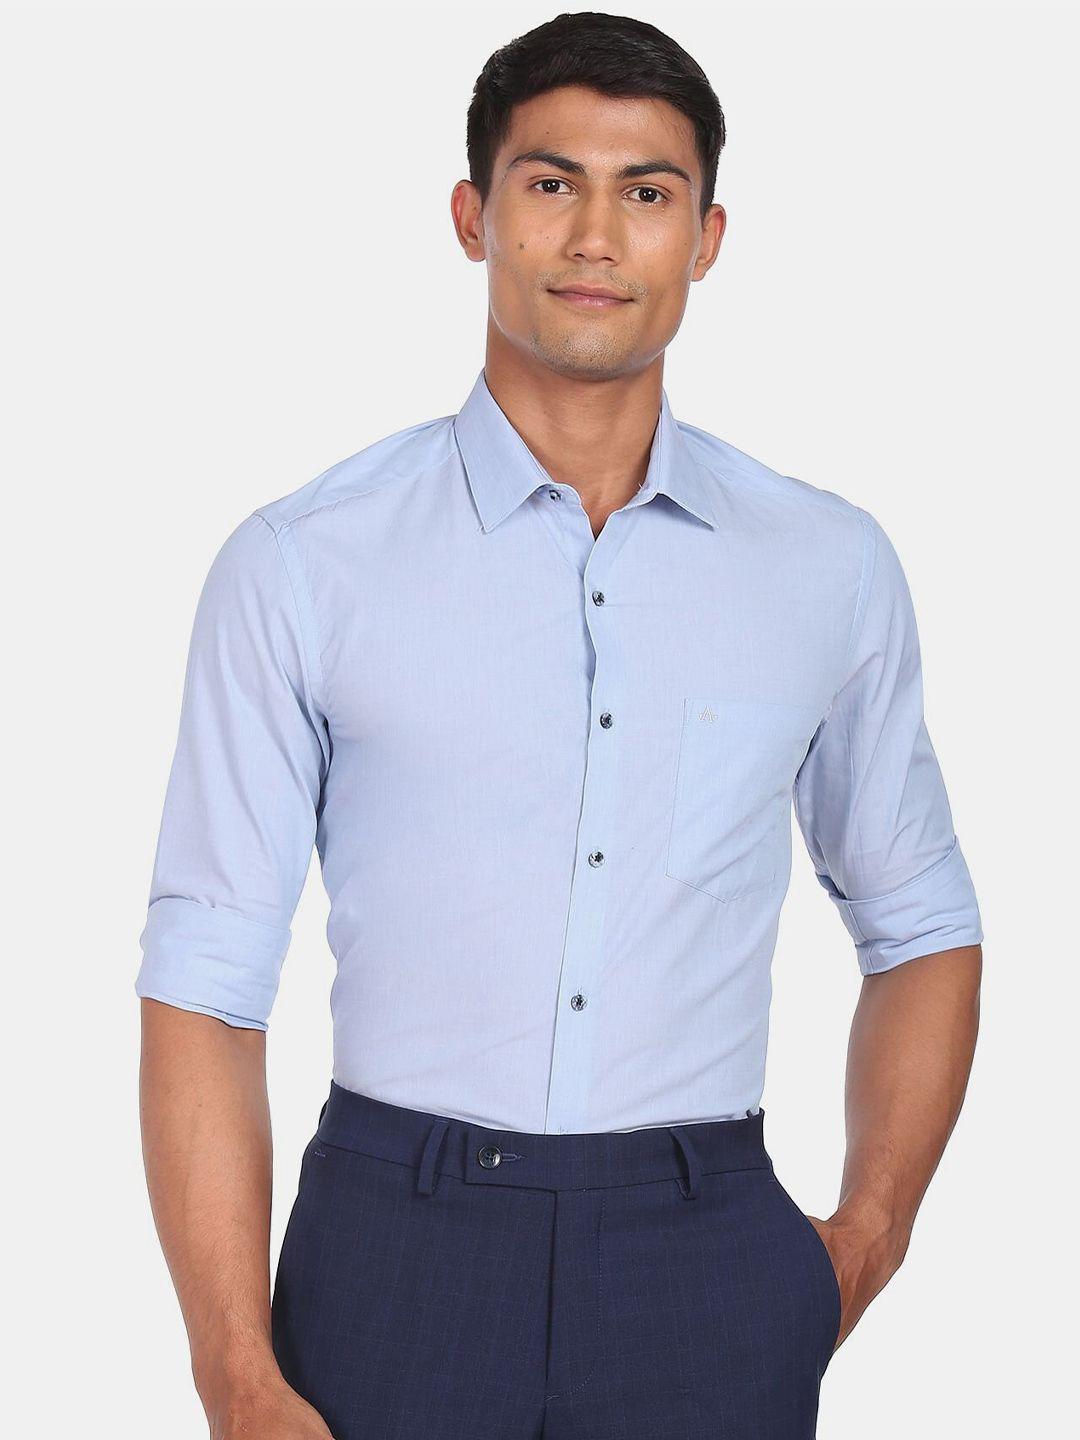 arrow men blue solid cotton slim fit formal shirt